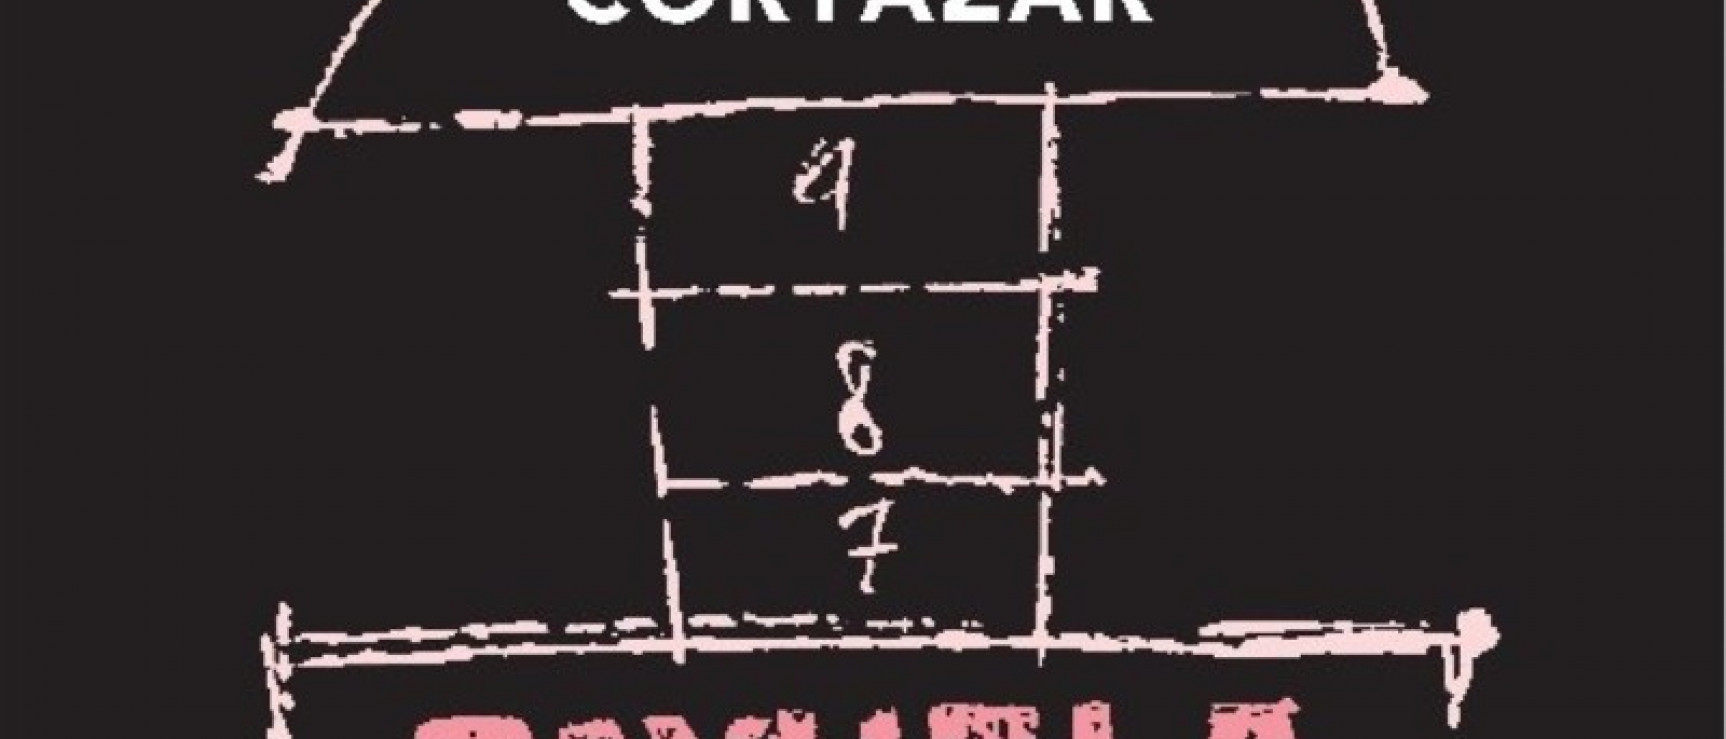 La edición recupera, como homenaje, la portada mítica que Julio Cortázar eligió en 1963.